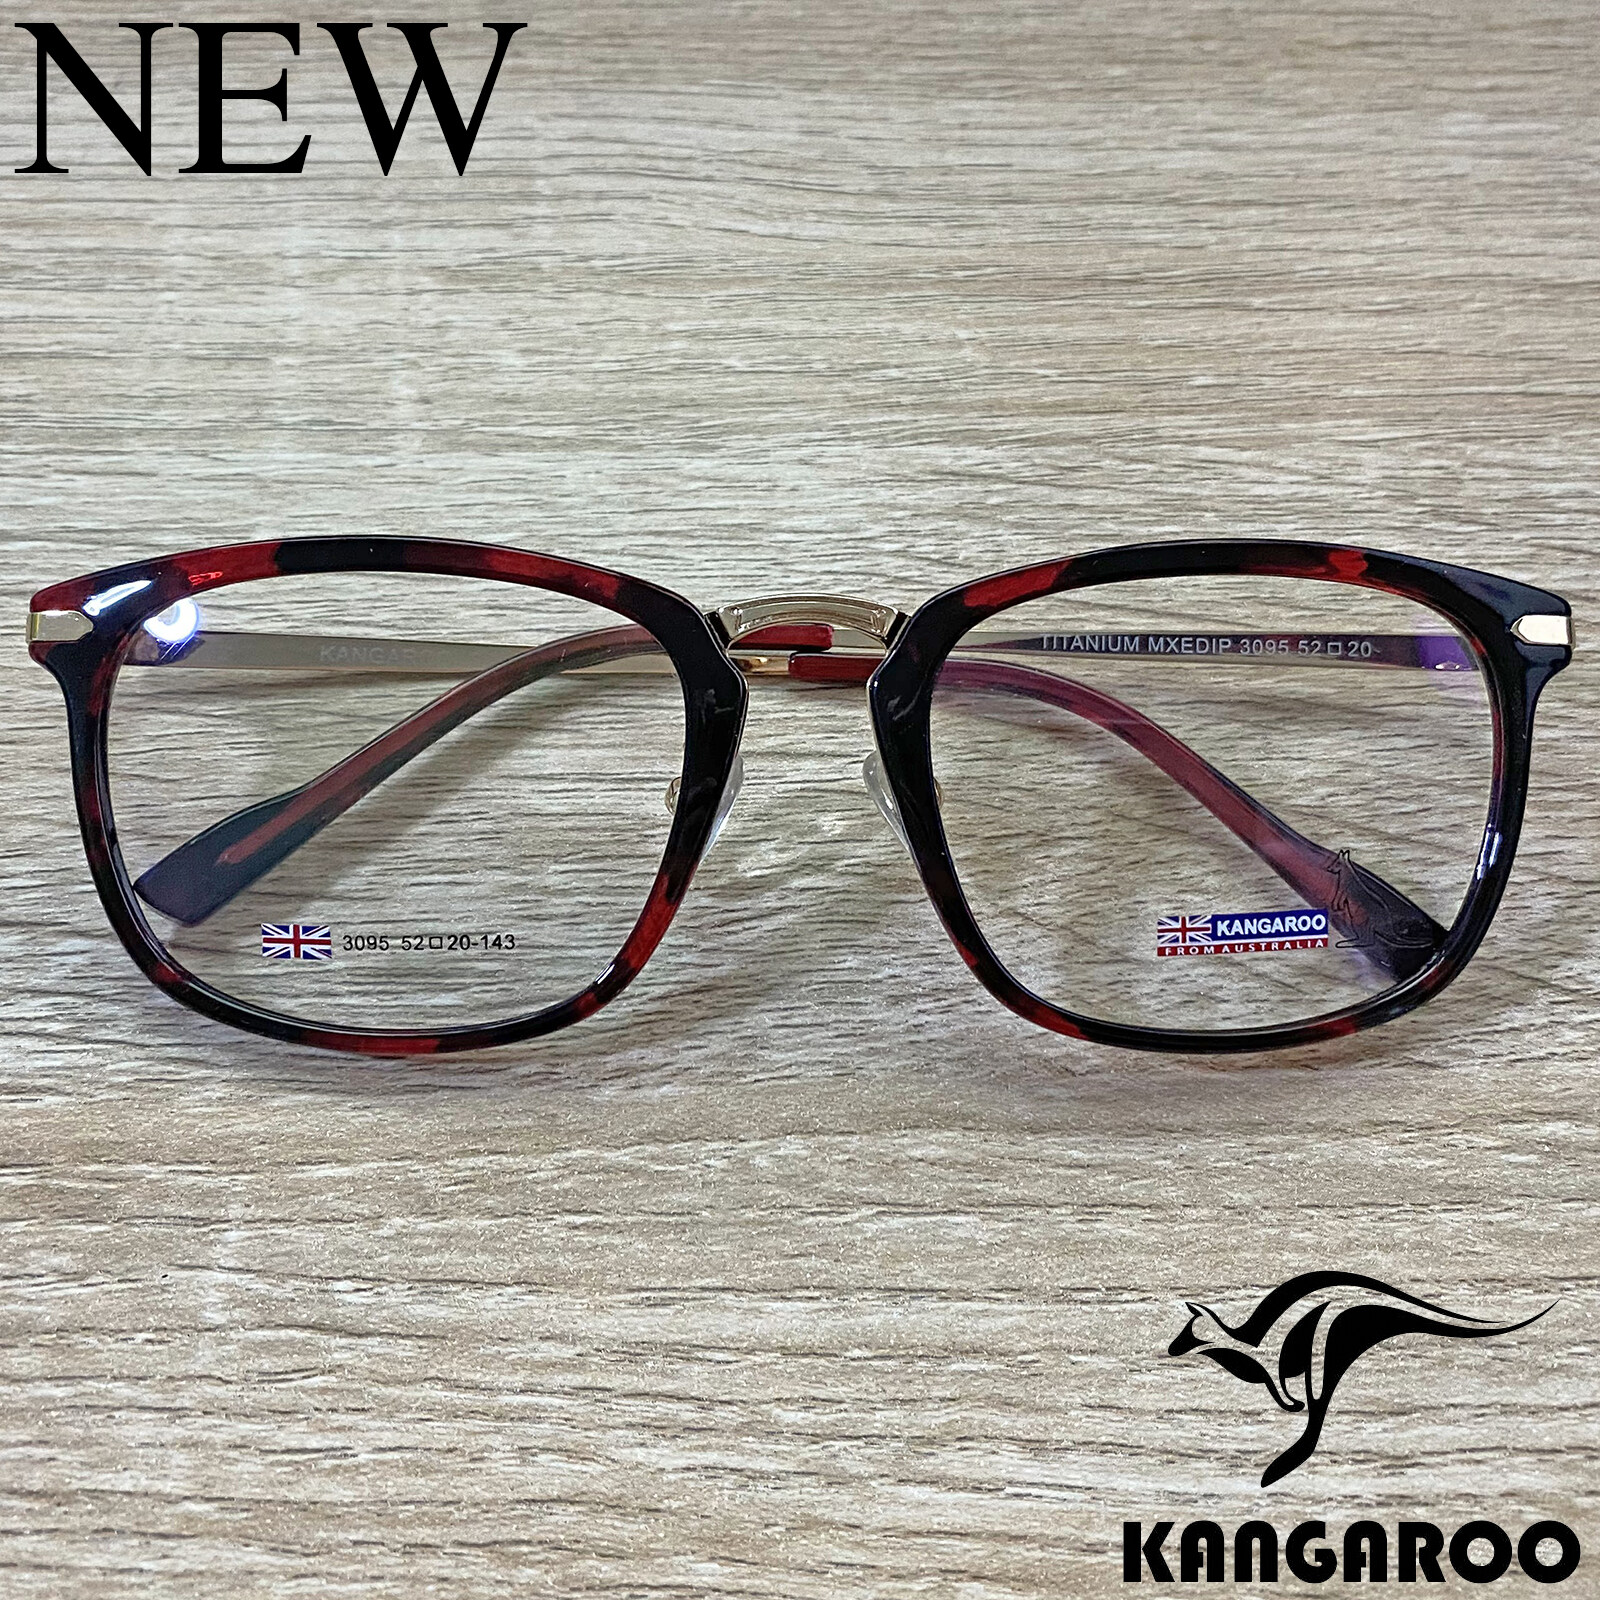 กรอบแว่นตา สำหรับตัดเลนส์ แว่นสายตา แว่นตา Fashion รุ่น Kangaroo 3095 สีแดงกละ กรอบเต็ม ทรงรี ขาข้อต่อ วัสดุ Stainless Steel รับตัดเลนส์ทุกชนิด ราคาถูก